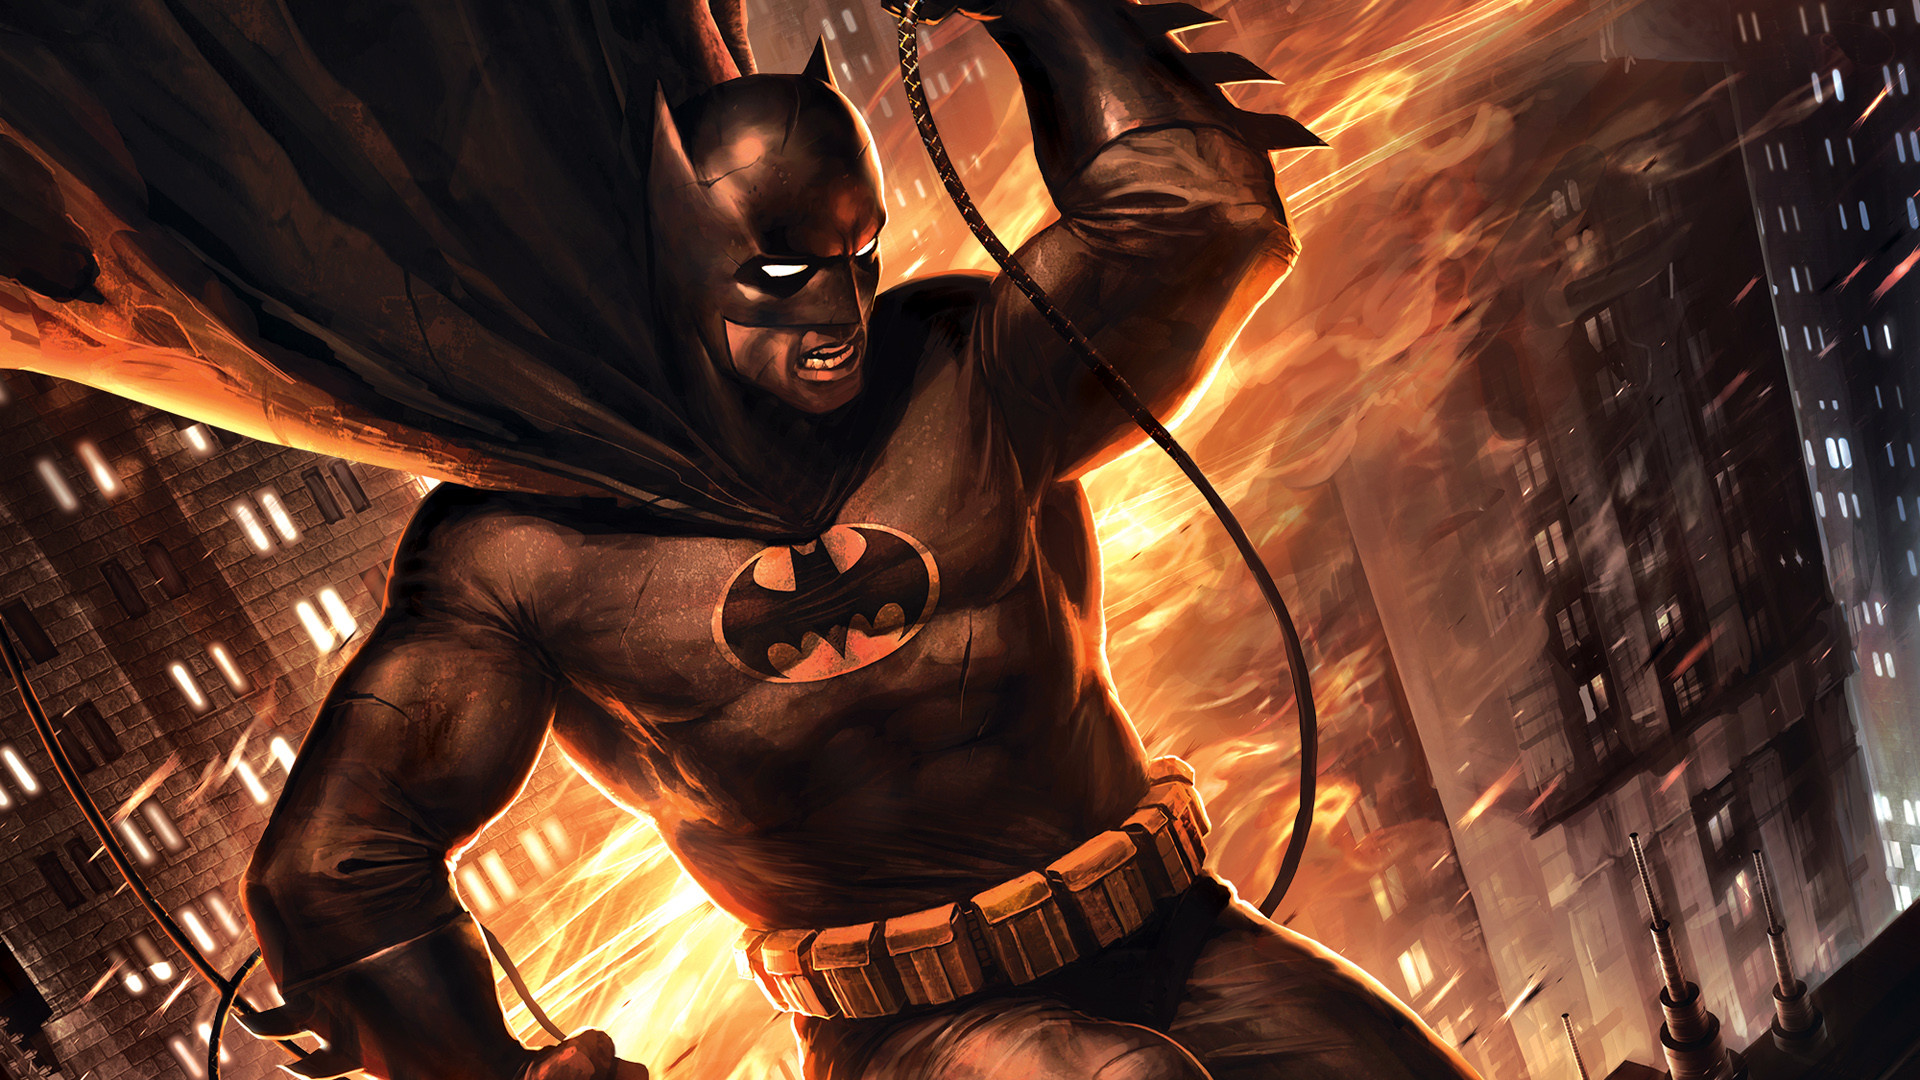 1920x1080 1 Batman: The Dark Knight Returns, Part 2 HD Wallpapers | Backgrounds -  Wallpaper Abyss